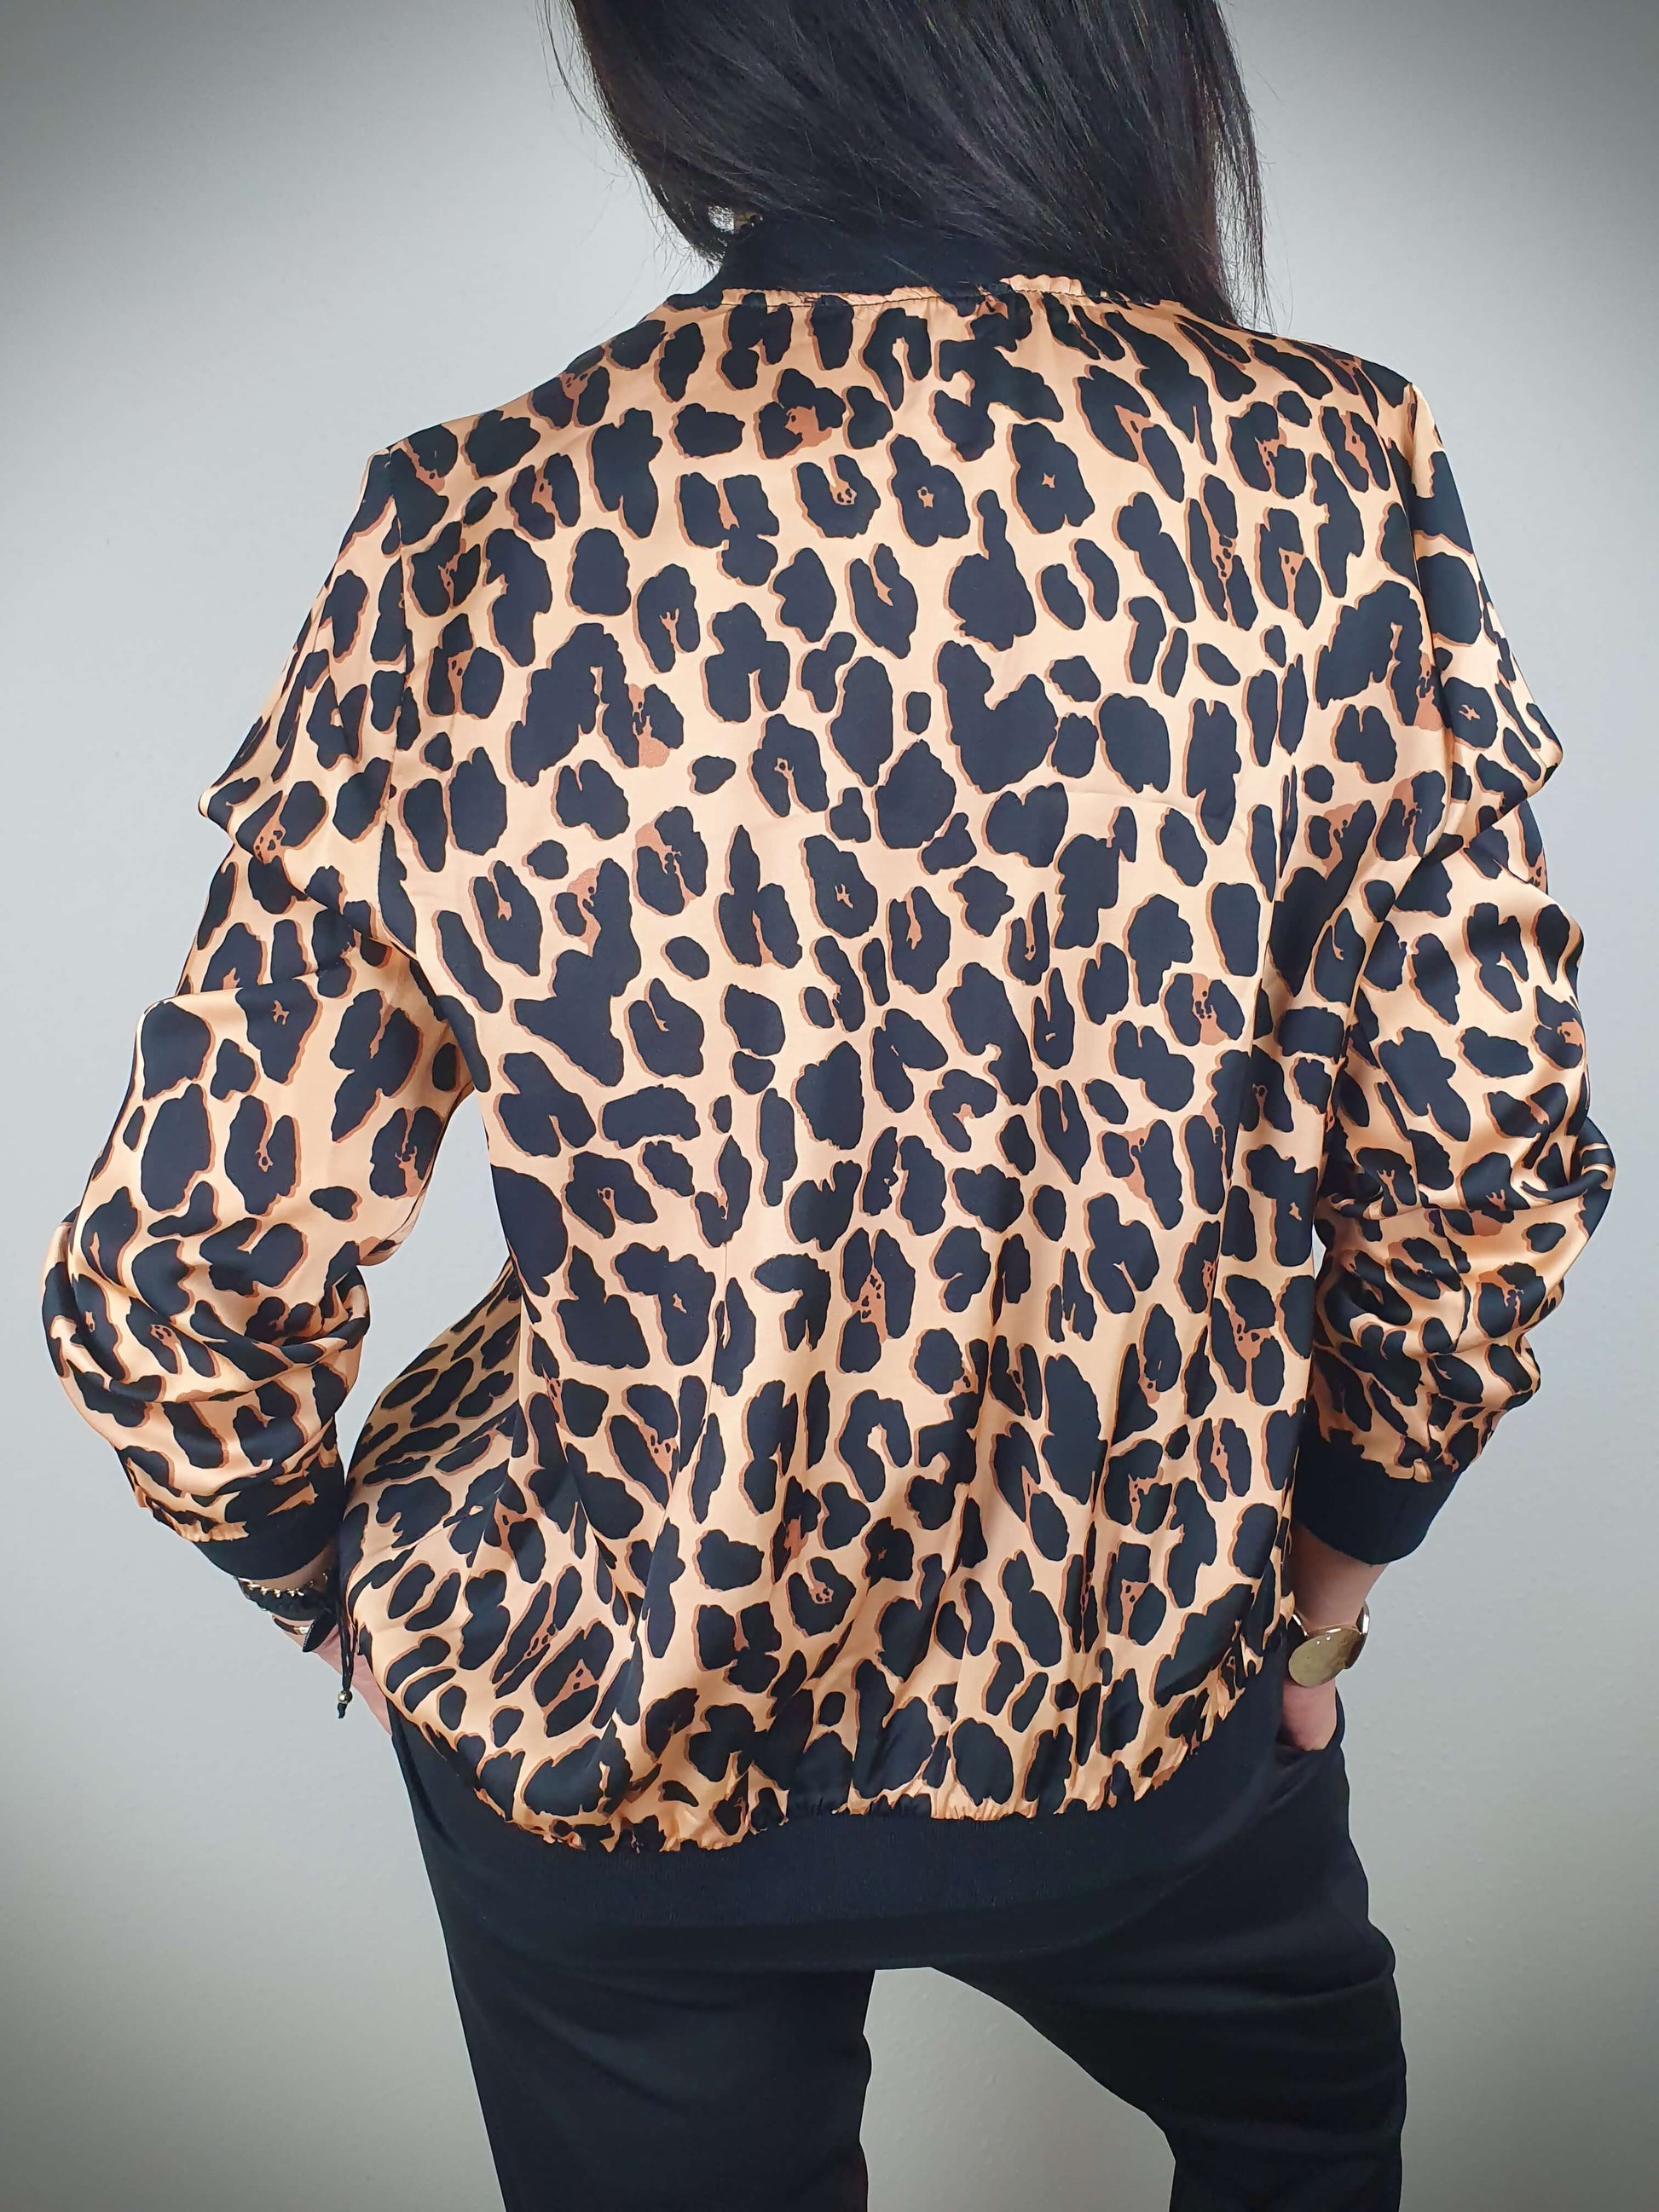 "Cette veste imprimée léopard est un véritable incontournable. Son style intemporel est rehaussé par son col, ses poignets et sa taille côtelés. Les manches longues ajoutent une touche de sophistication. Fabriquée en Italie, elle est confectionnée dans un tissu doux et satiné composé à 80% de viscose et à 20% de satin, offrant un confort luxueux. La fermeture zippée sur l'avant facilite son enfilage."